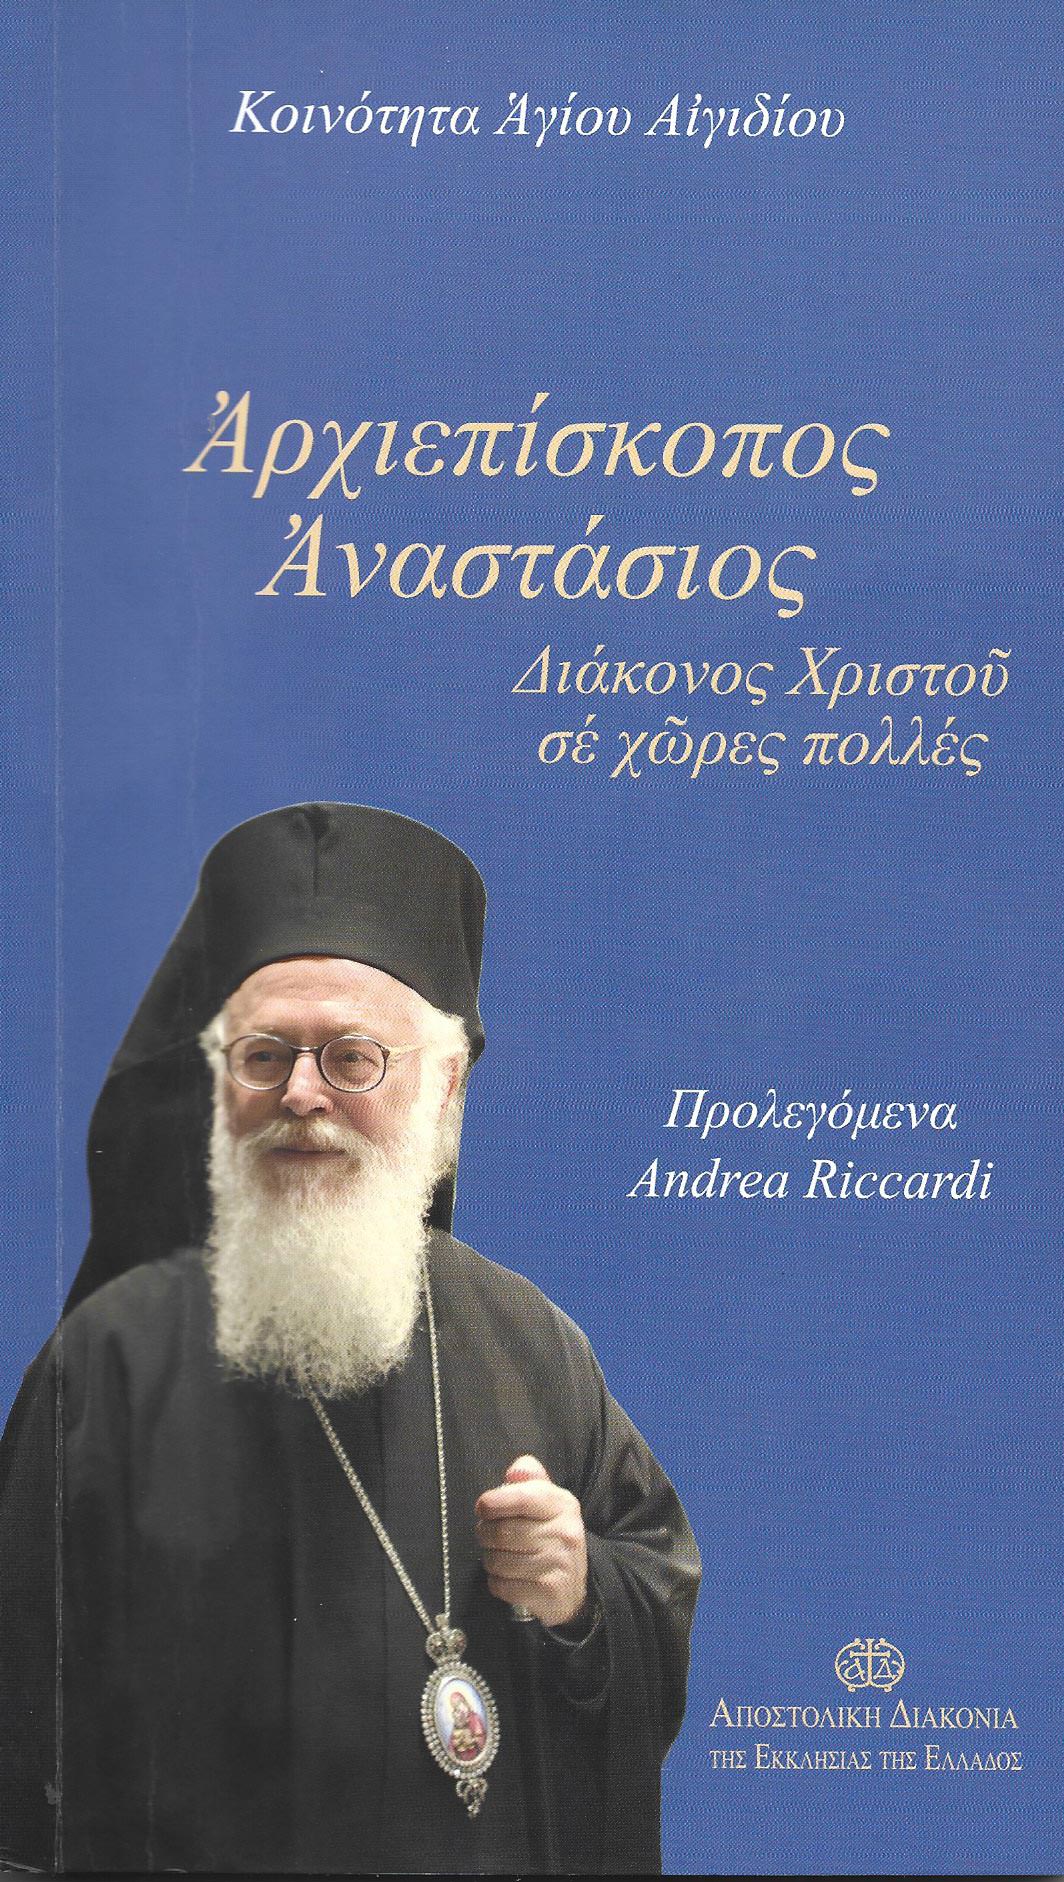 Αλβανίας Αναστάσιος Βιβλίο